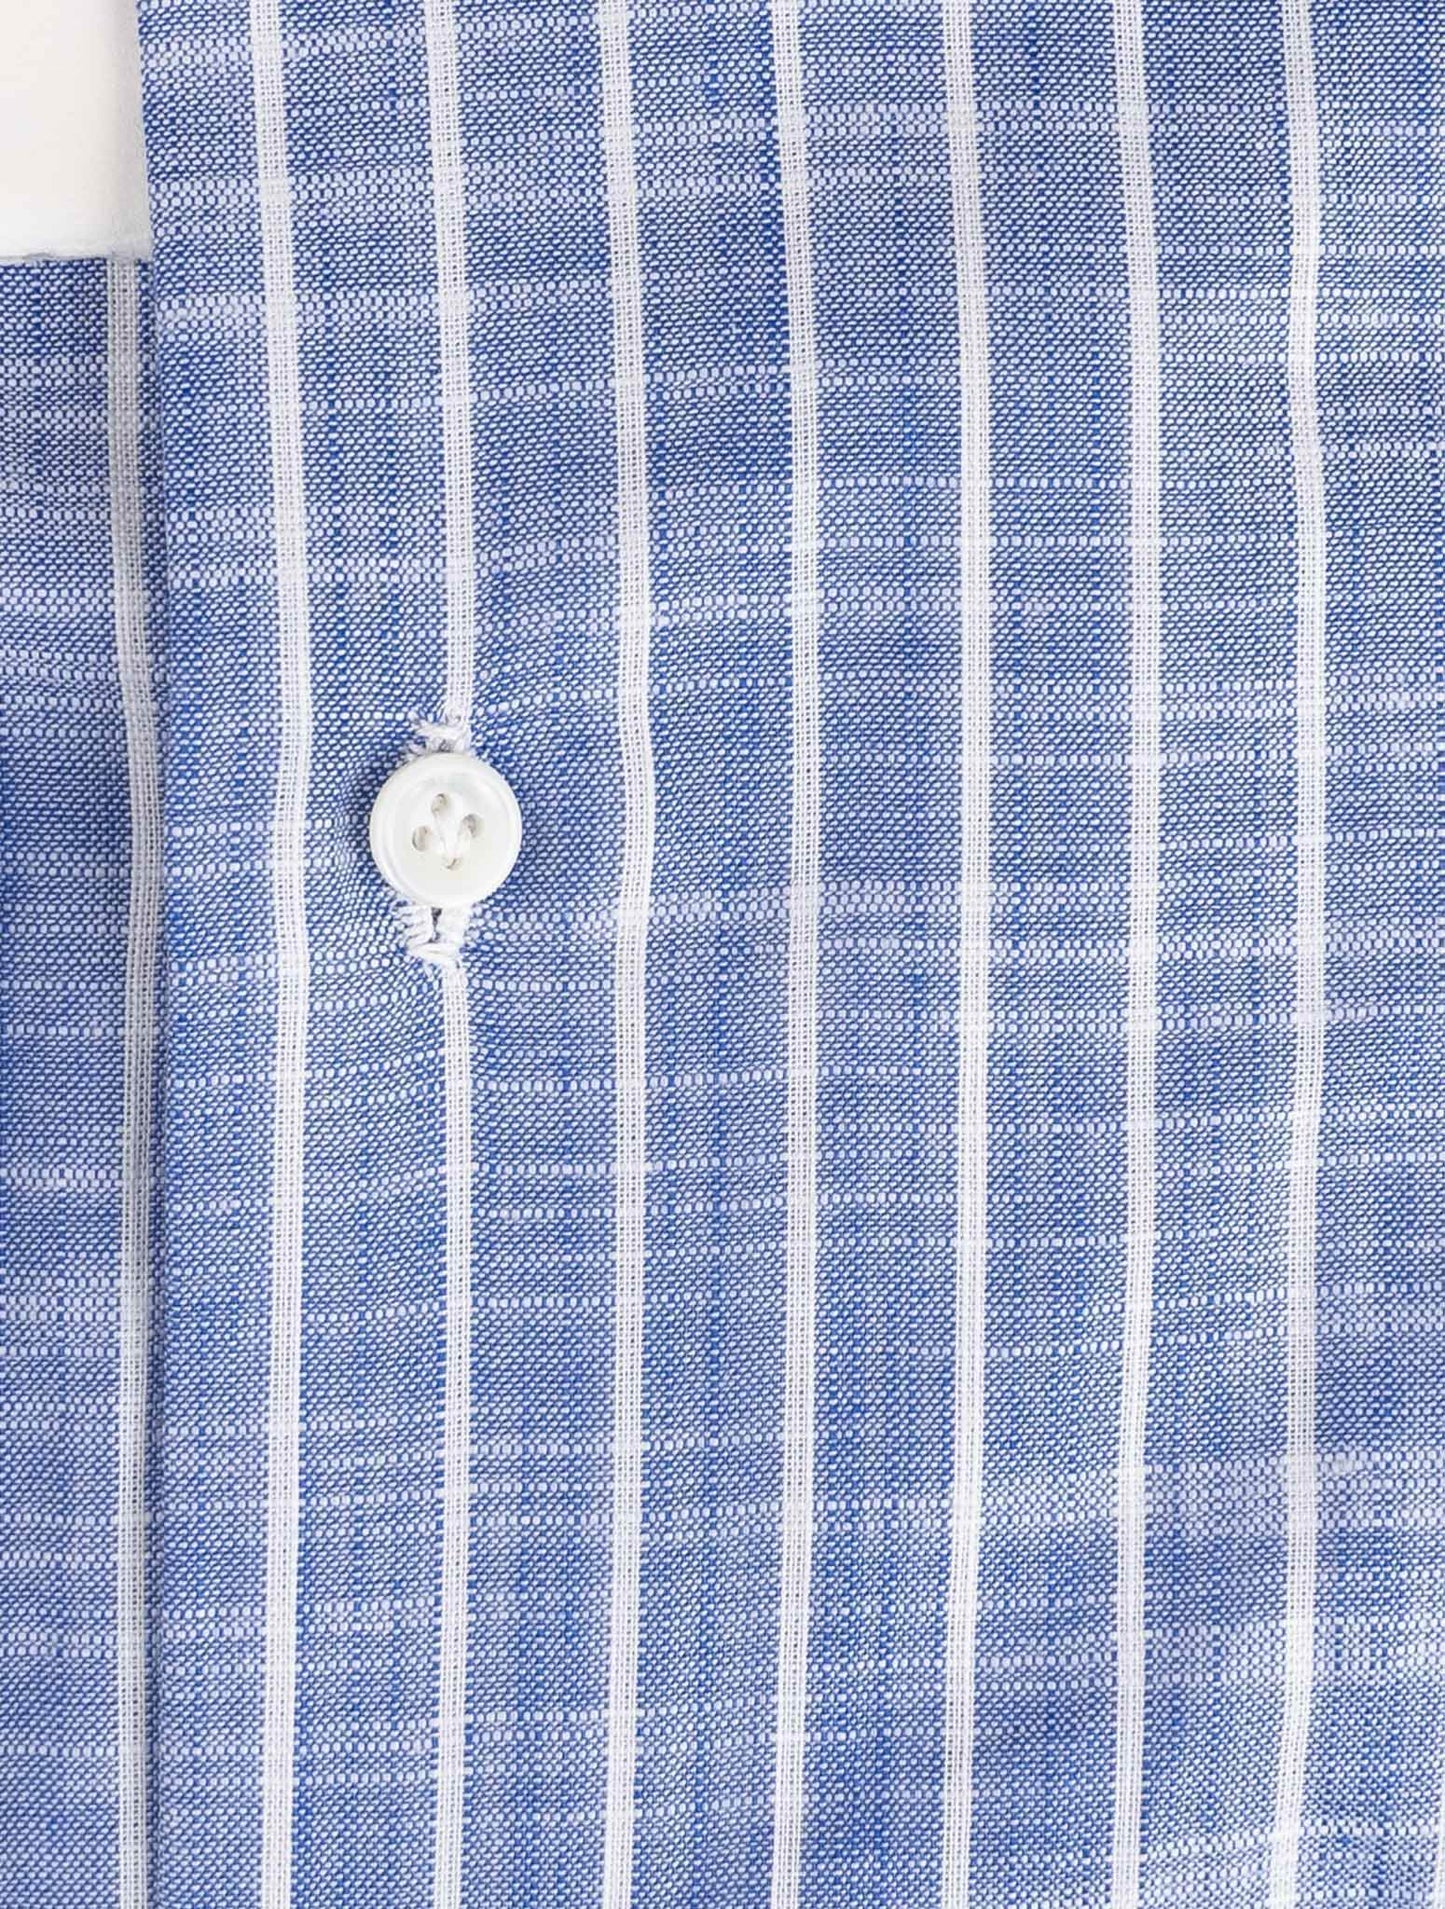 Luigi Borrelli浅蓝色白色棉质衬衫